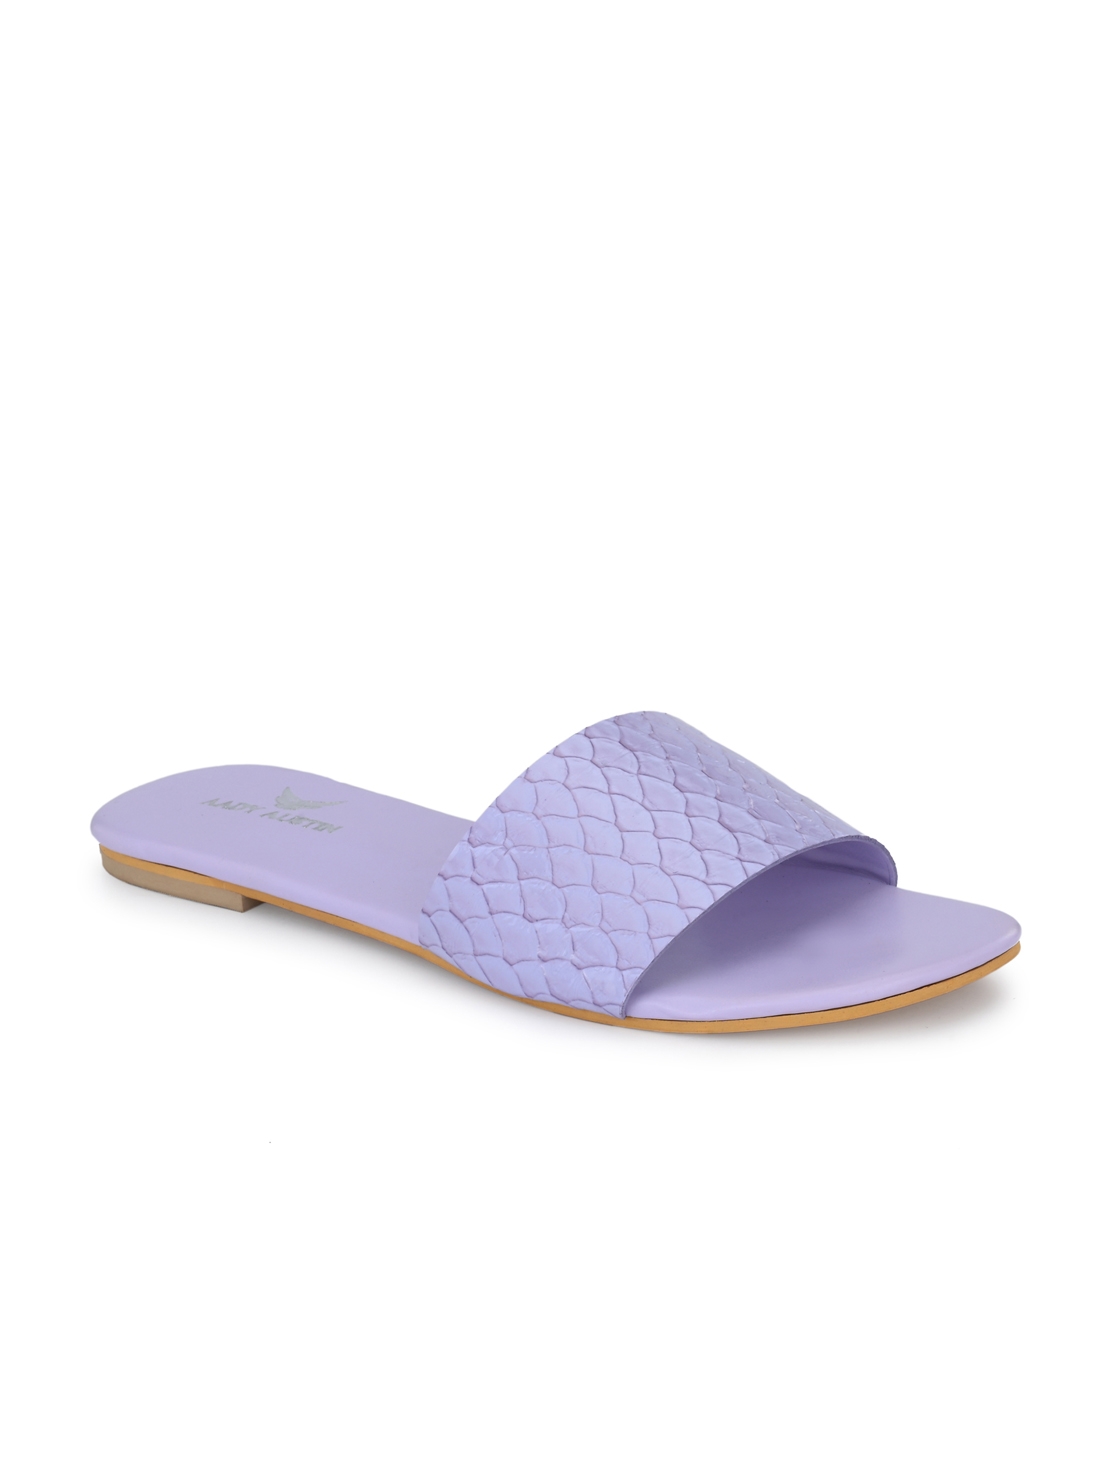 AADY AUSTIN | Aady Austin Lavender Open Toe Slider Flats for women 1